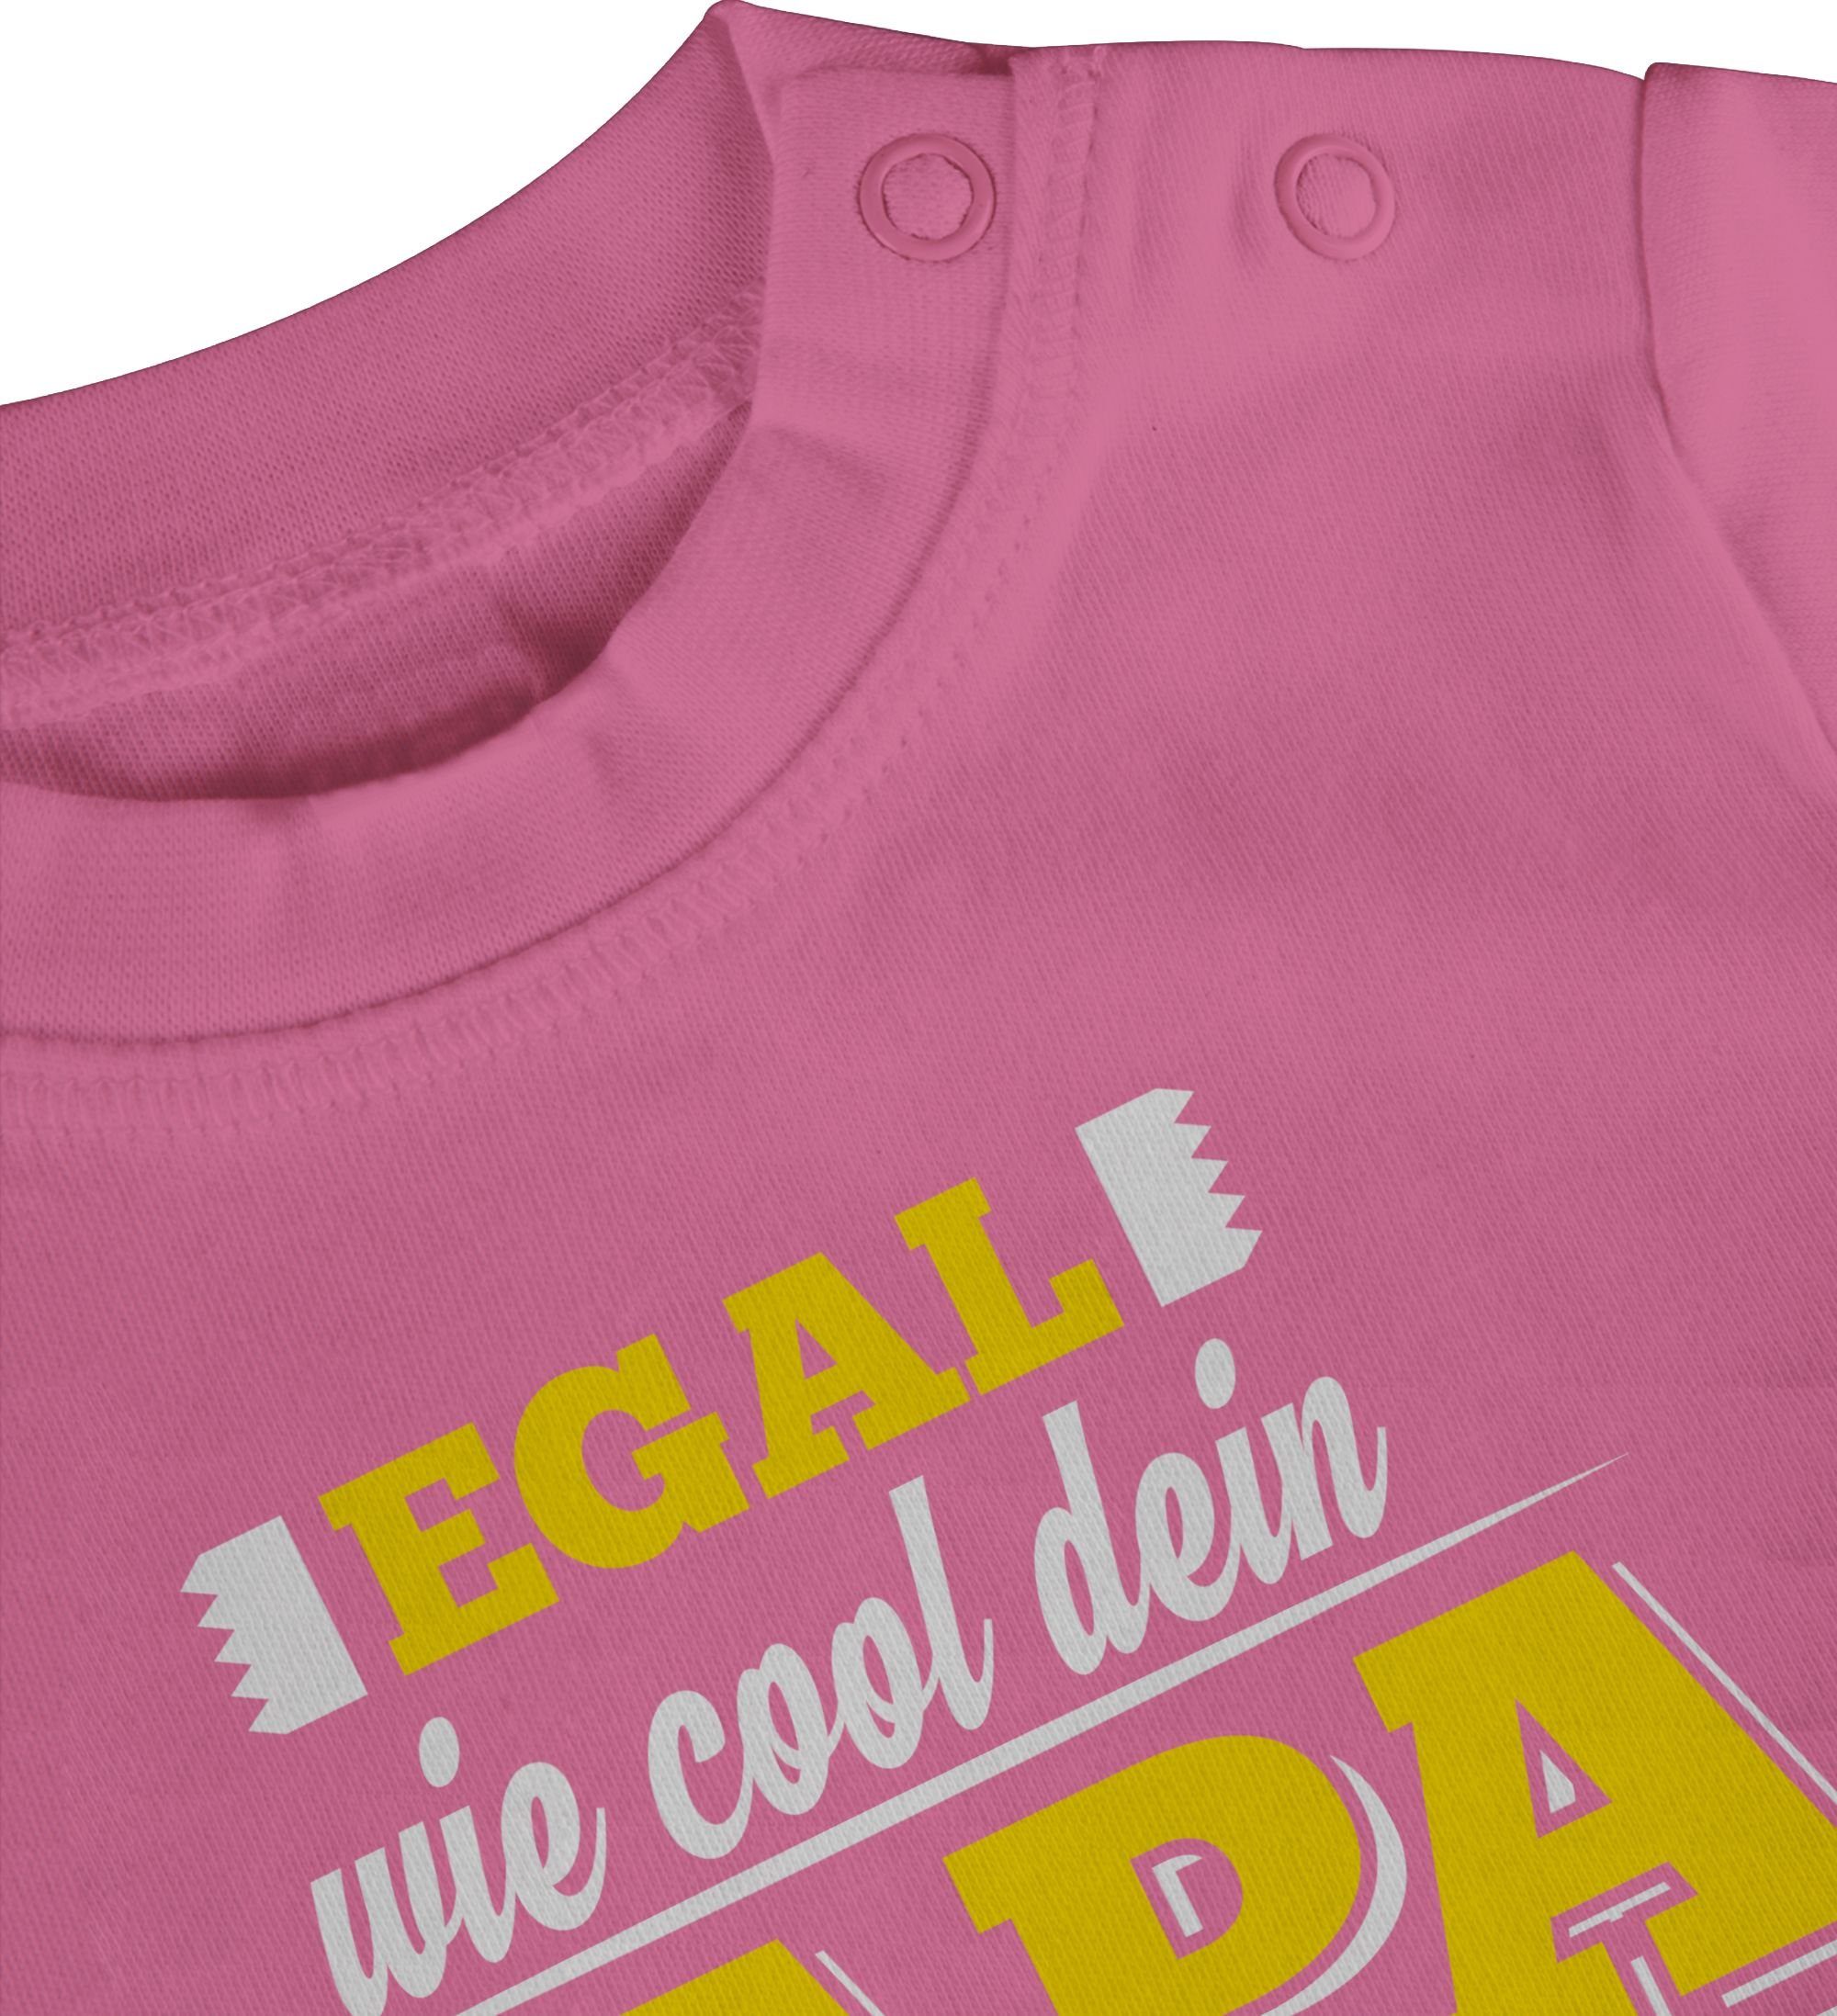 ist Baby Papa Egal Pink Shirtracer Cool dein wie Sprüche T-Shirt meiner 2 Landwirt